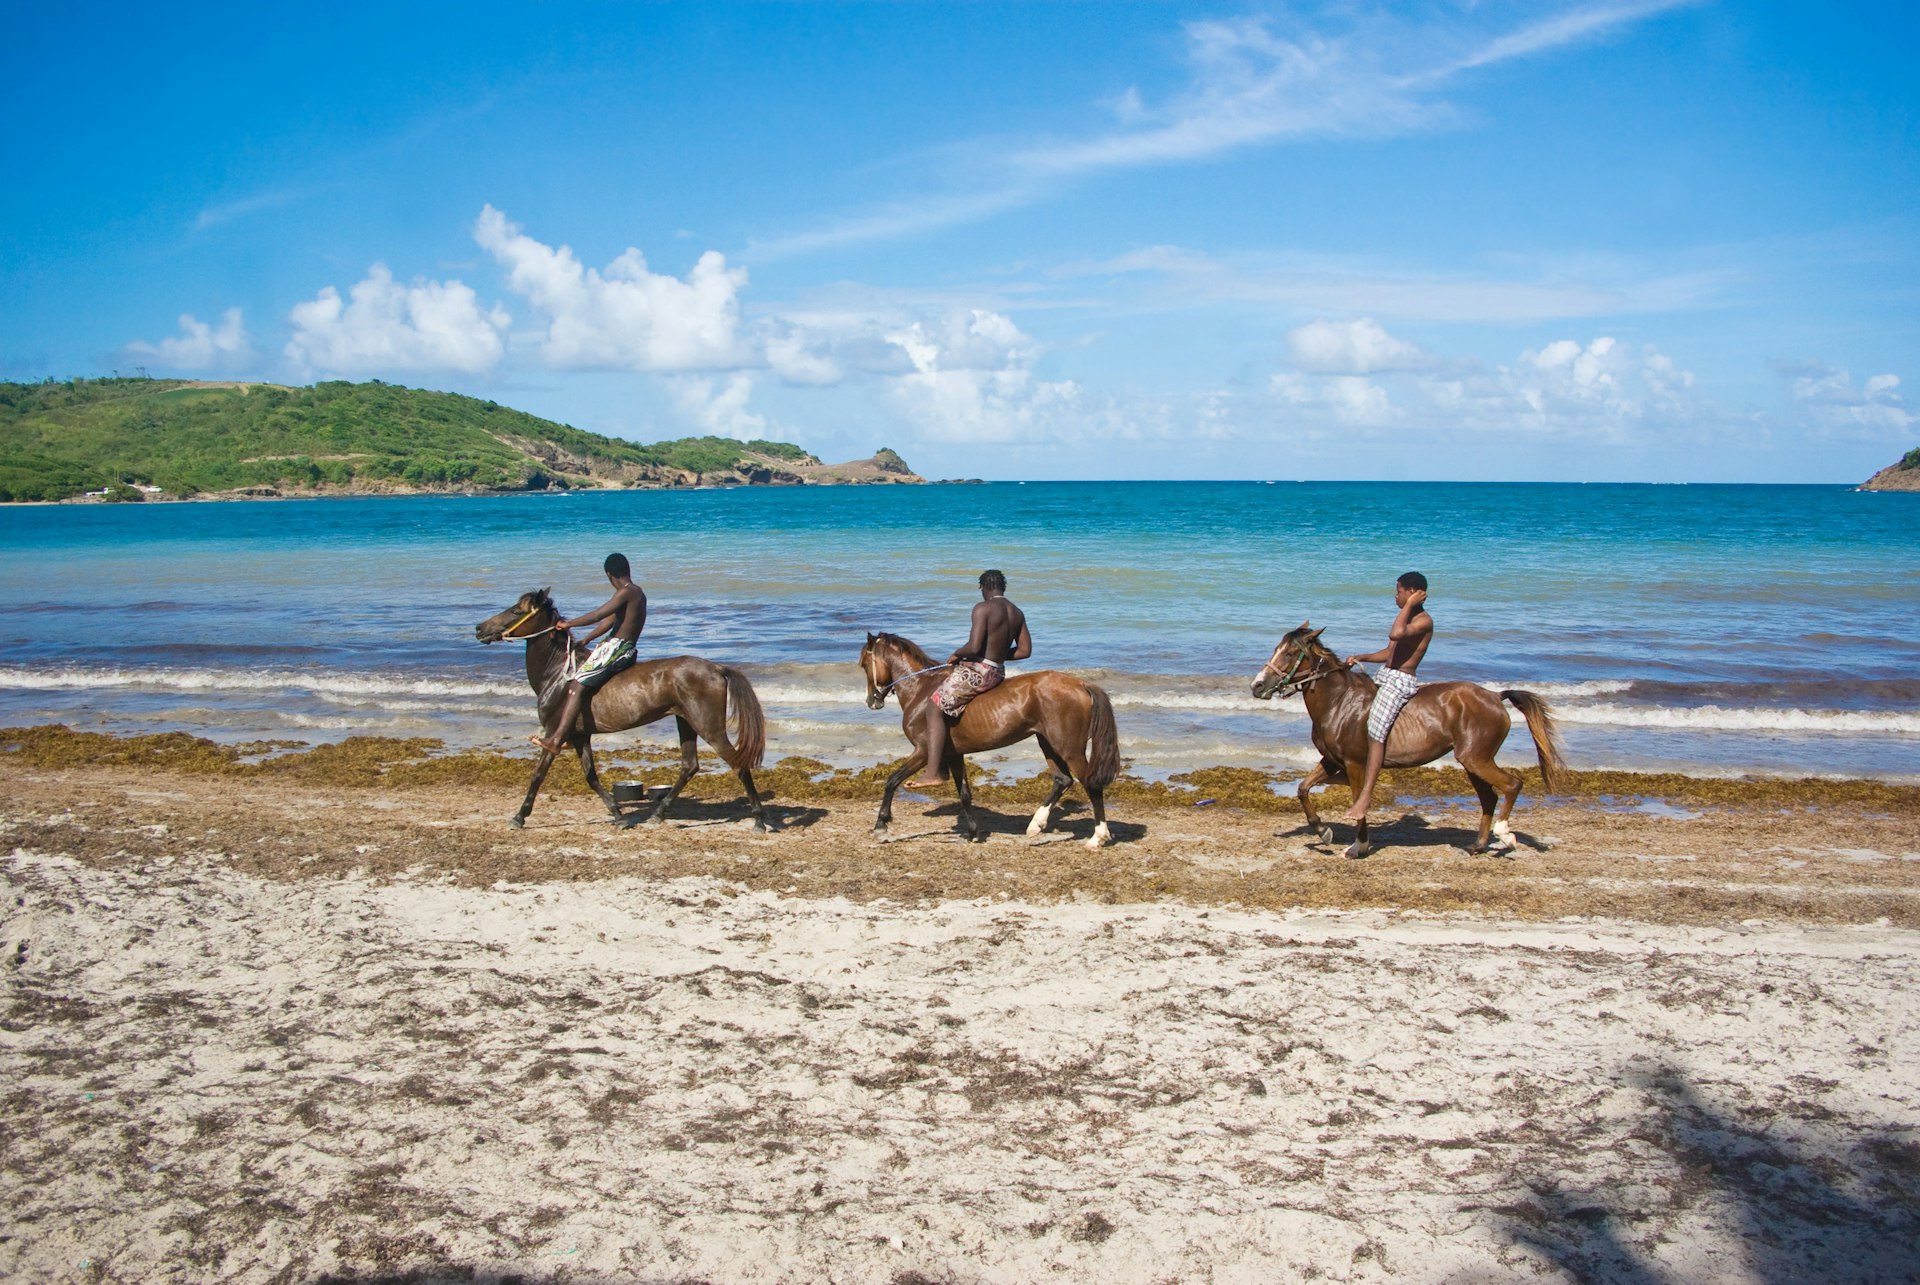 Horeseback riding in St. Lucia's Cas en Bas Beach